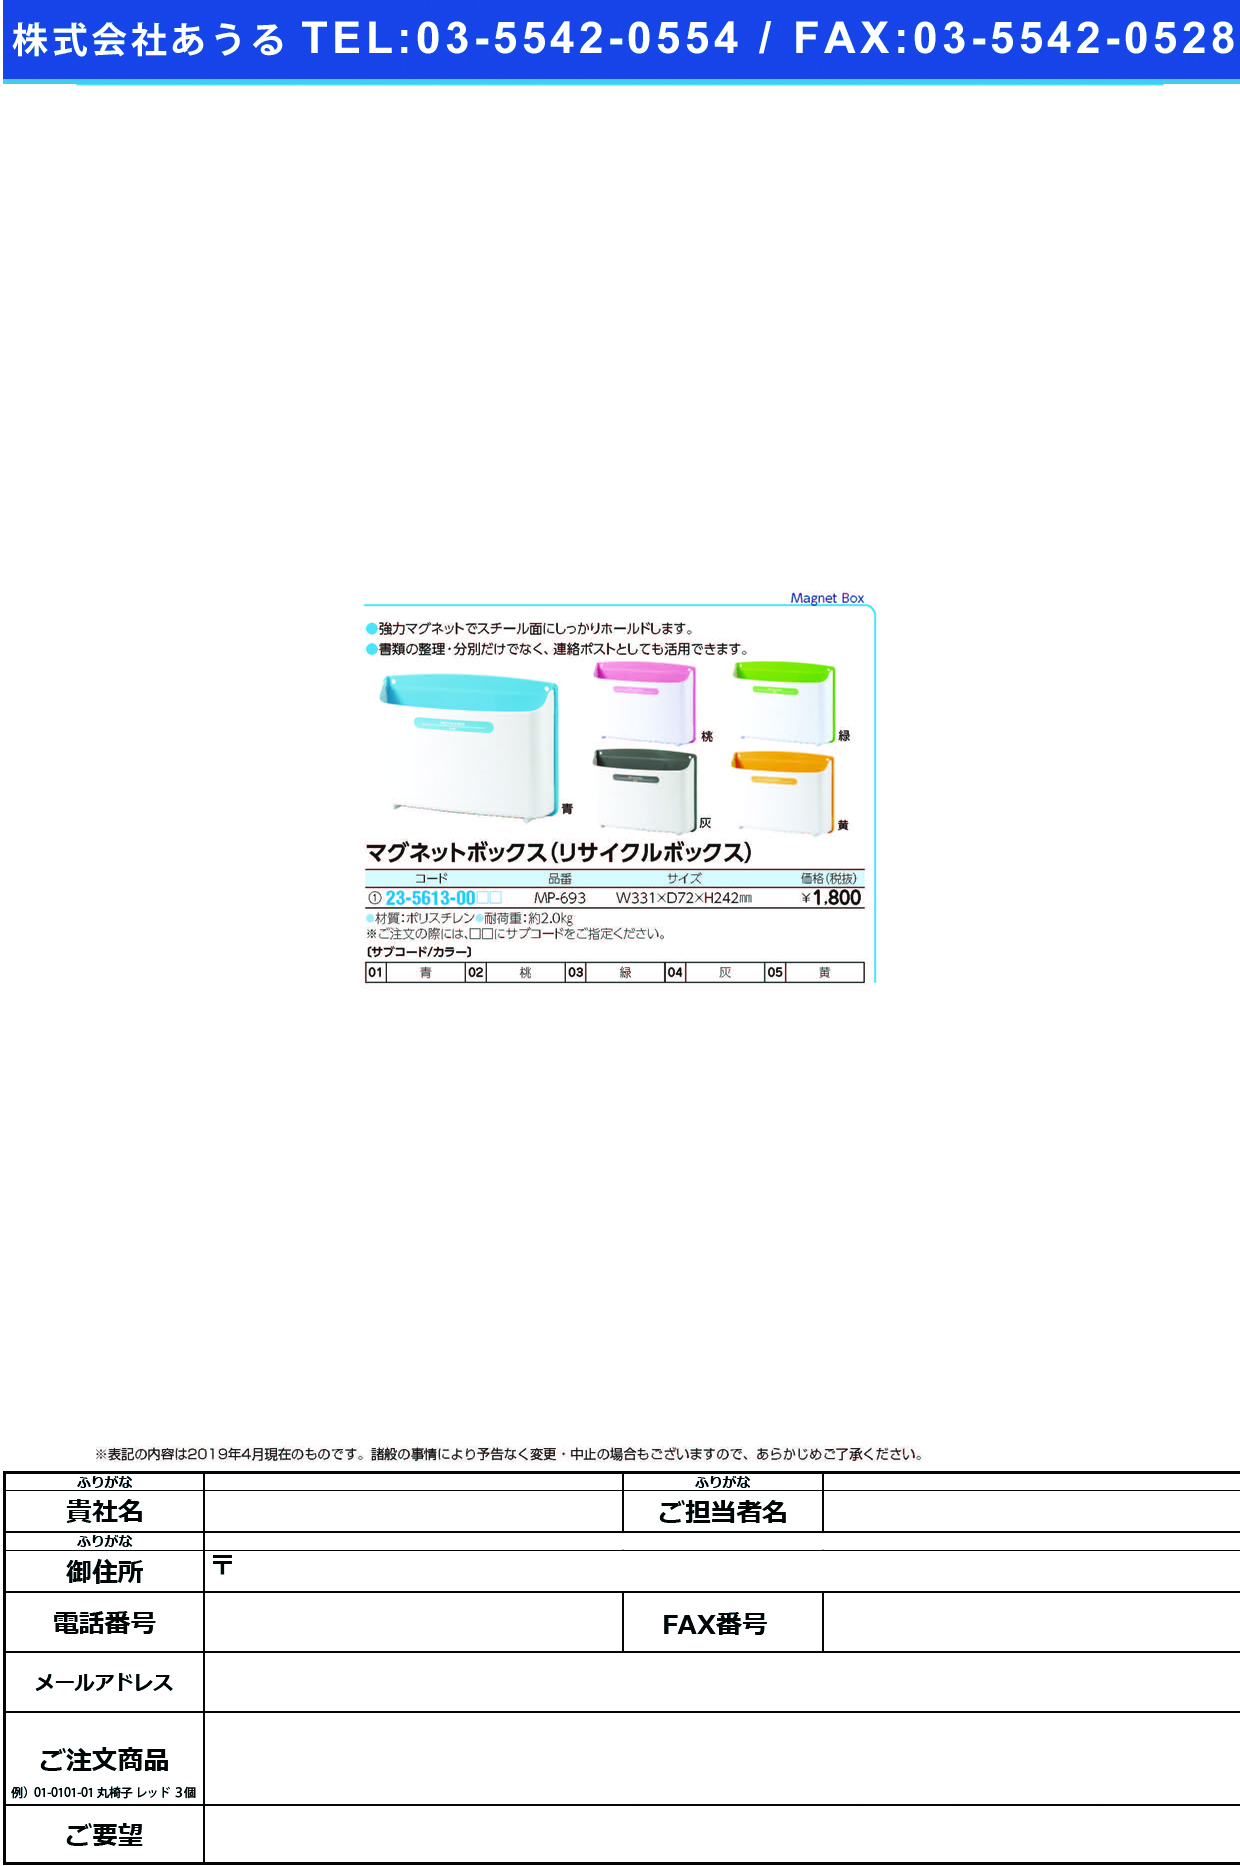 (23-5613-00)マグネットボックス（リサイクルＢＯＸ MP-693 ﾏｸﾞﾈｯﾄﾎﾞｯｸｽ(ﾘｻｲｸﾙBOX 青【1個単位】【2019年カタログ商品】